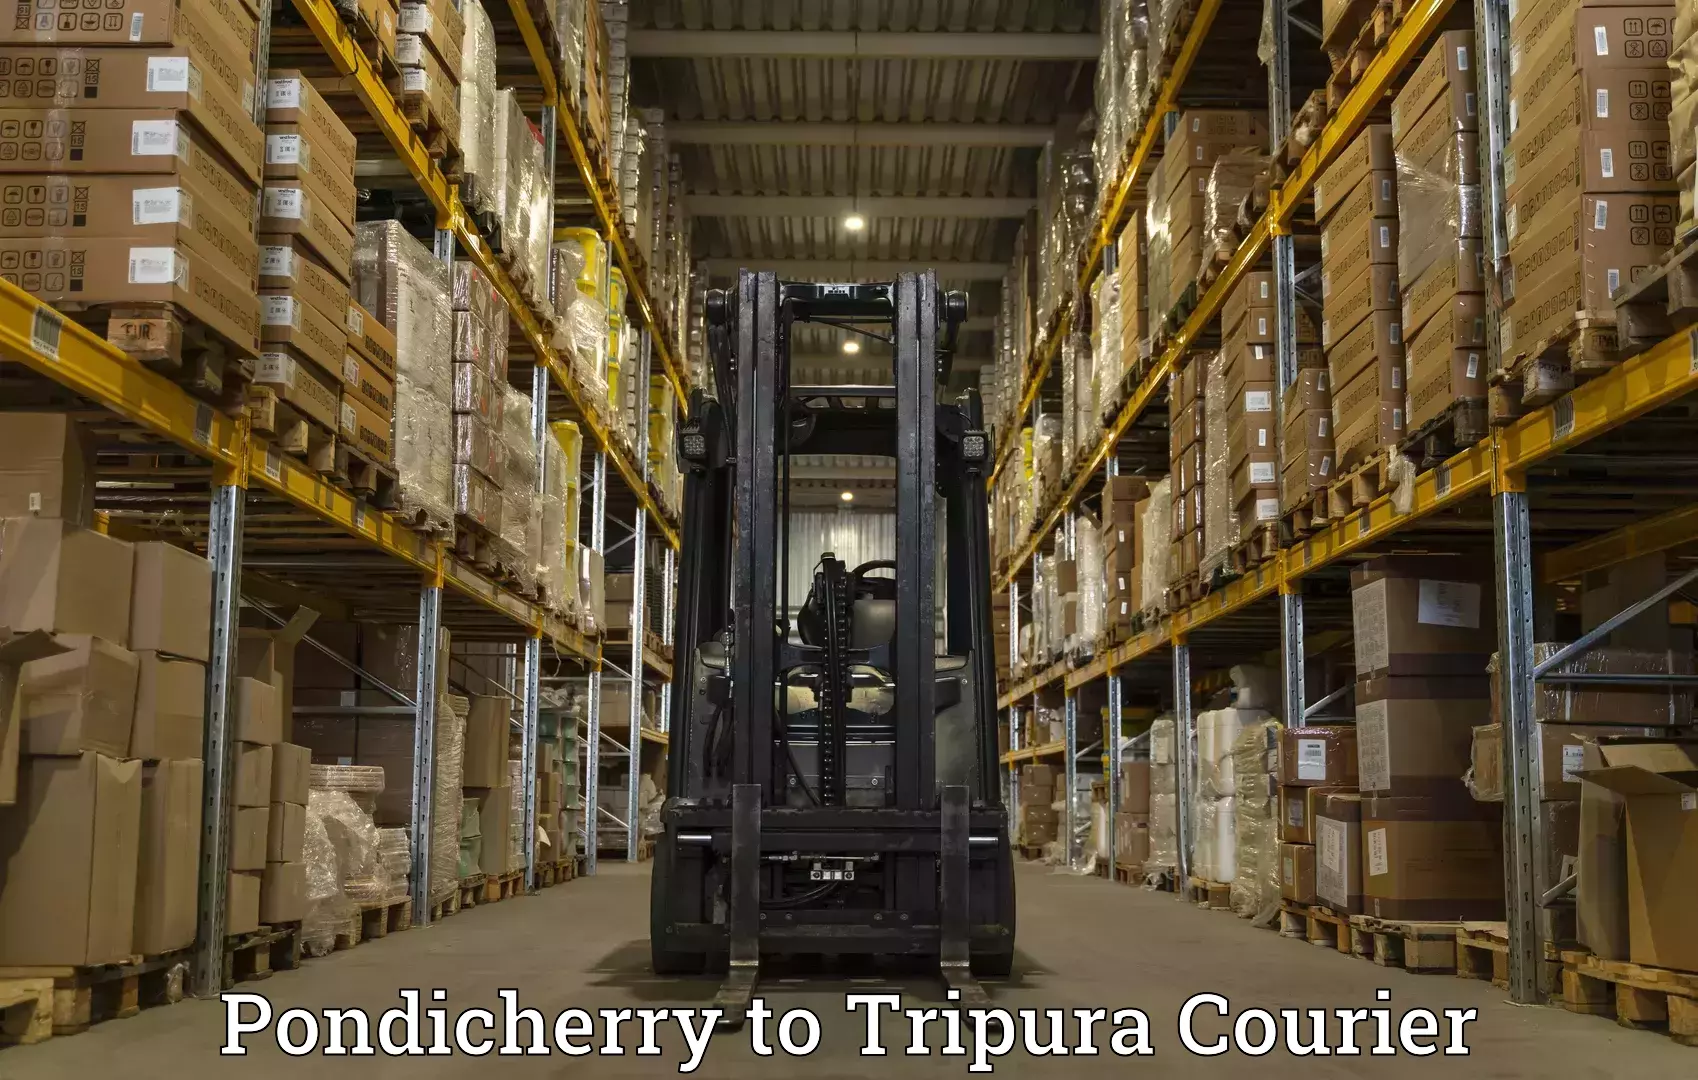 Courier service comparison Pondicherry to Tripura